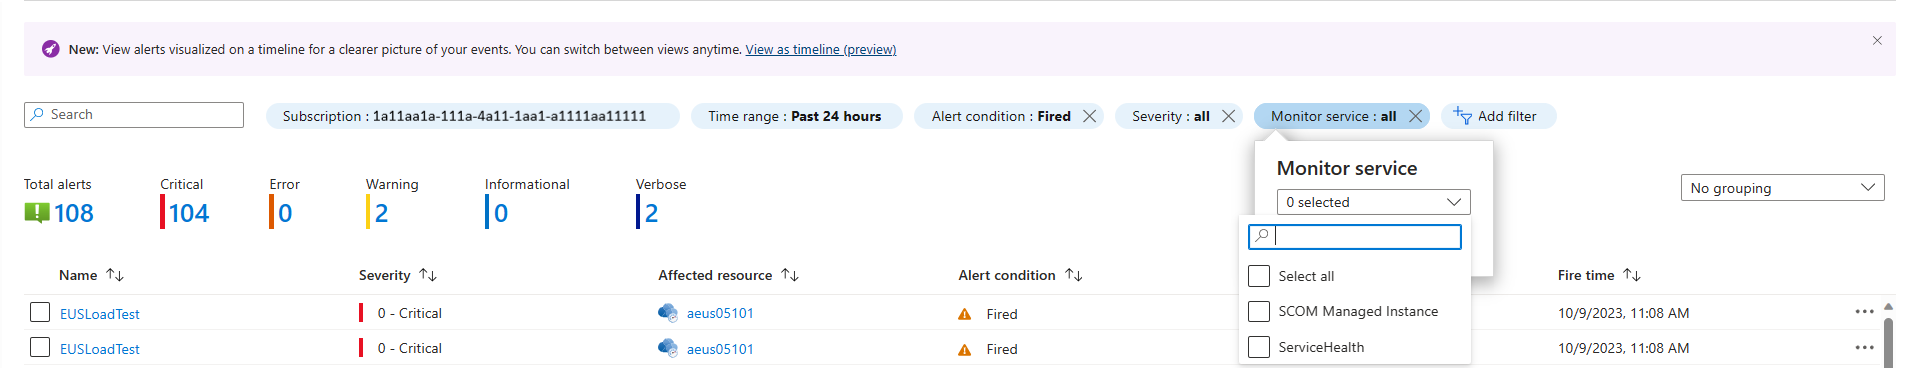 Snímek obrazovky s filtrem služby Monitorování